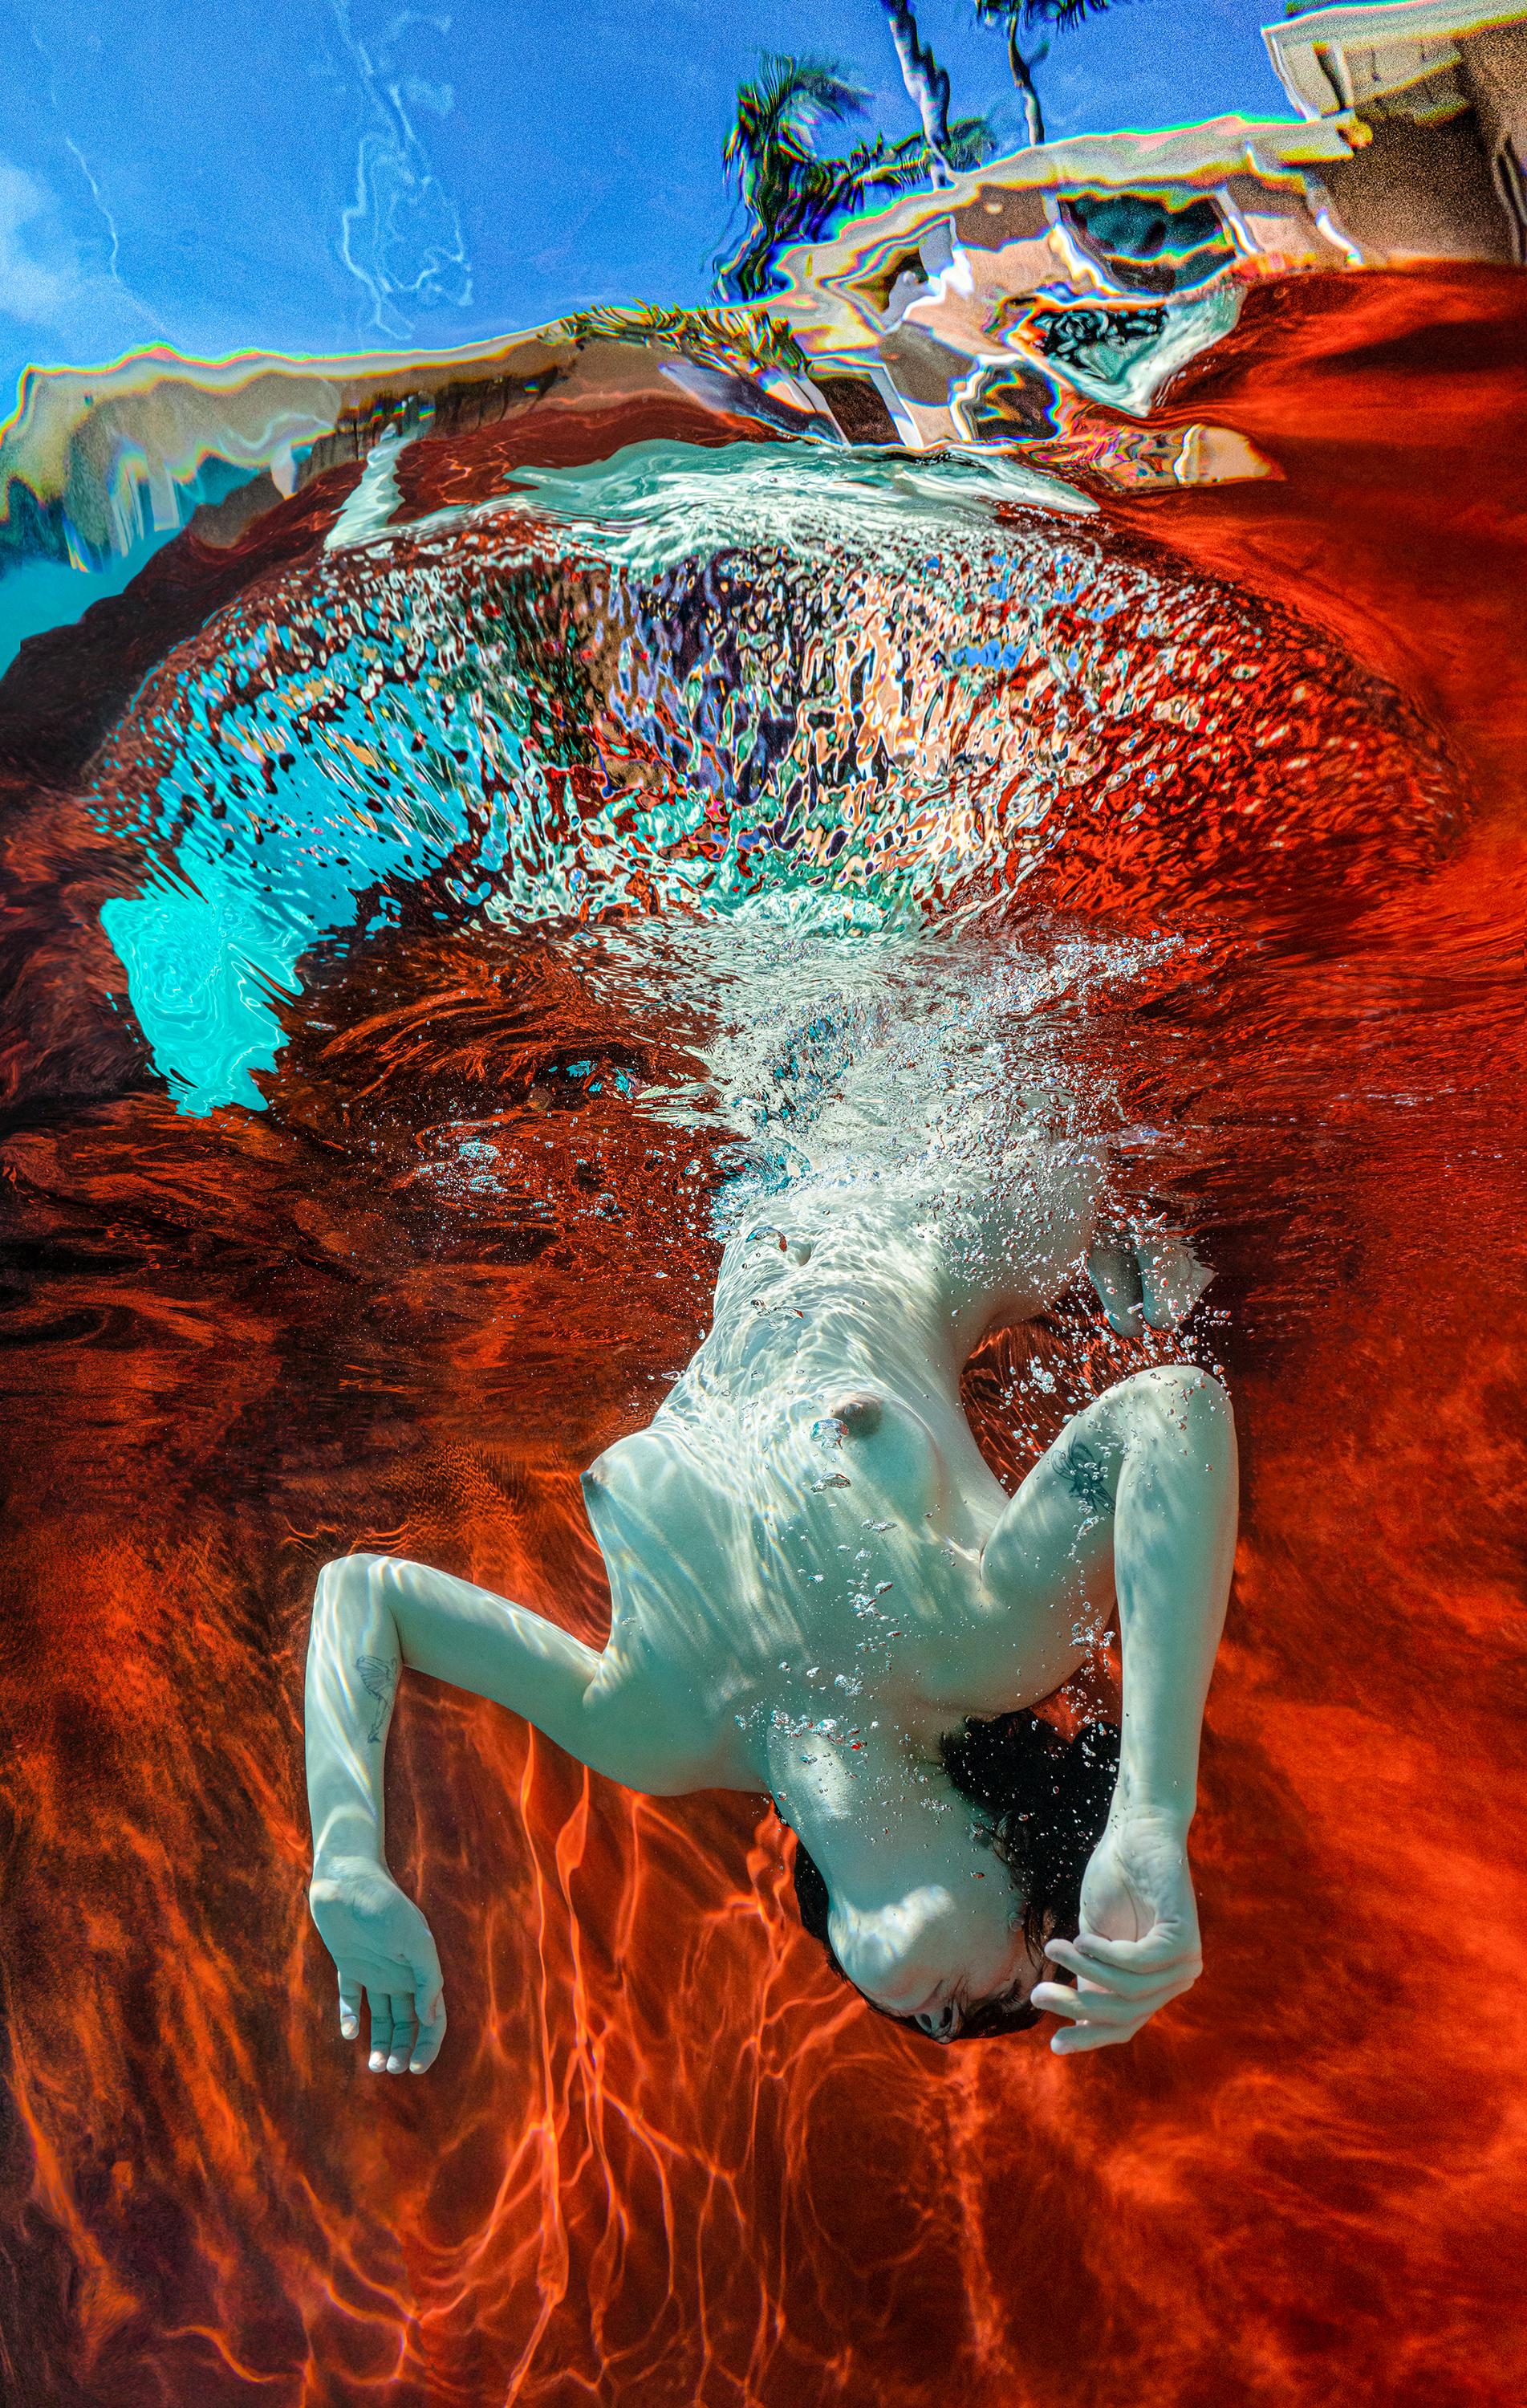 Figurative Photograph Alex Sher - Summer - photographie de nu subaquatique - pigment d'archives 35" x 22"